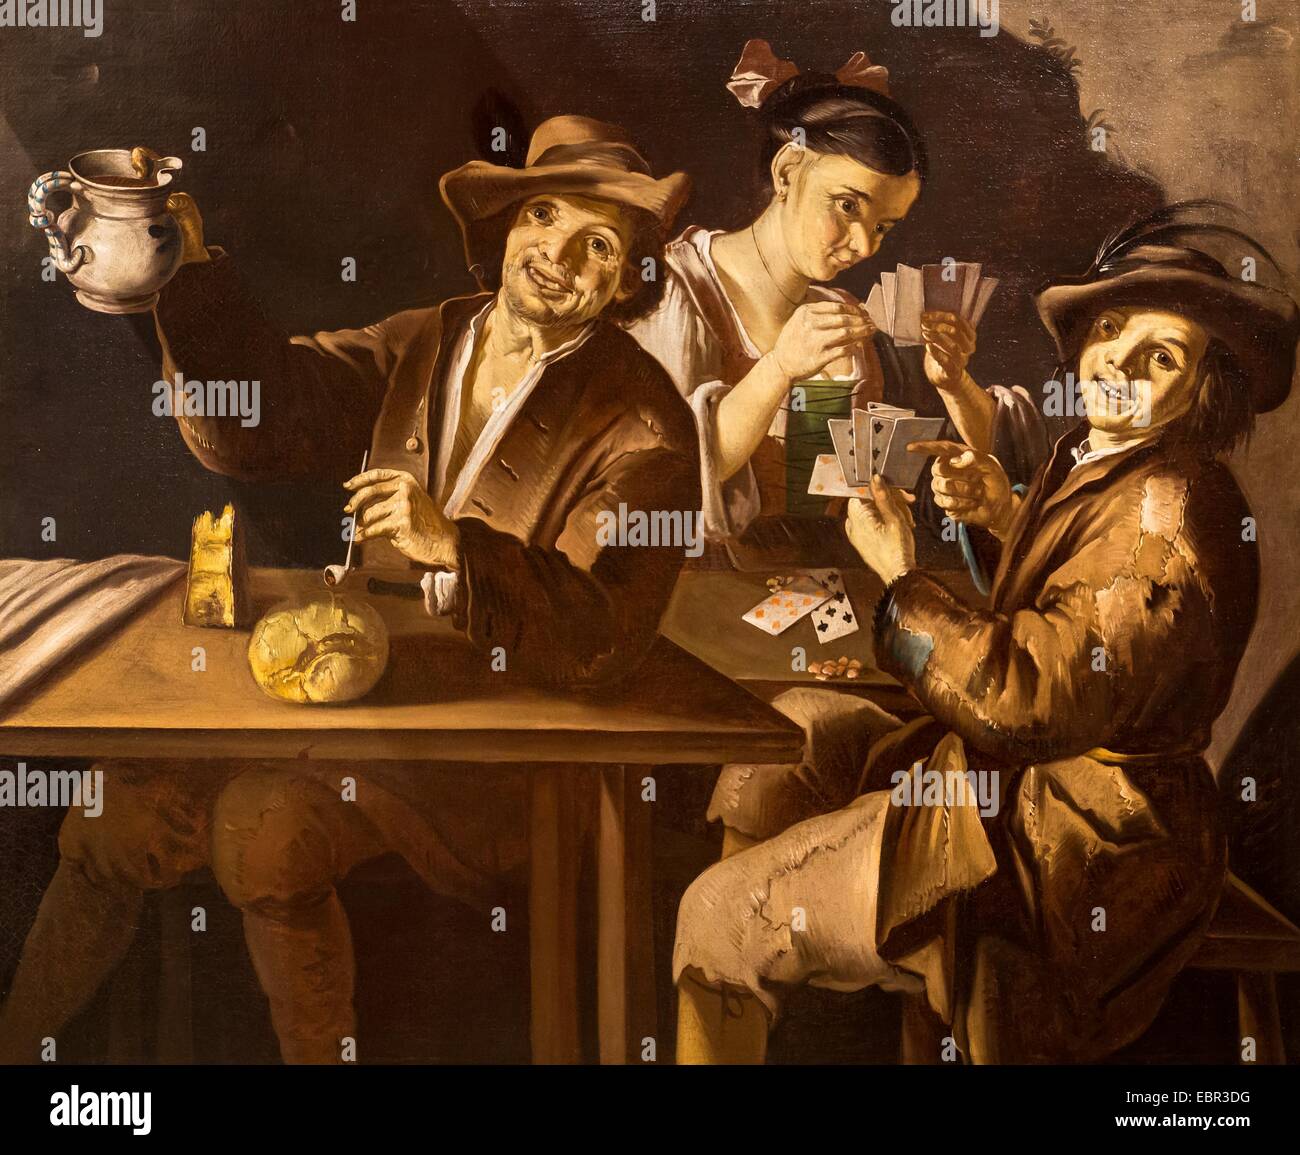 ActiveMuseum 0003220.jpg / joueurs de cartes dans une taverne, 17e siècle - Giacomo Cipper dit Todeschini 19/09/2013 - 17e siècle / Collection / Musée actif Banque D'Images